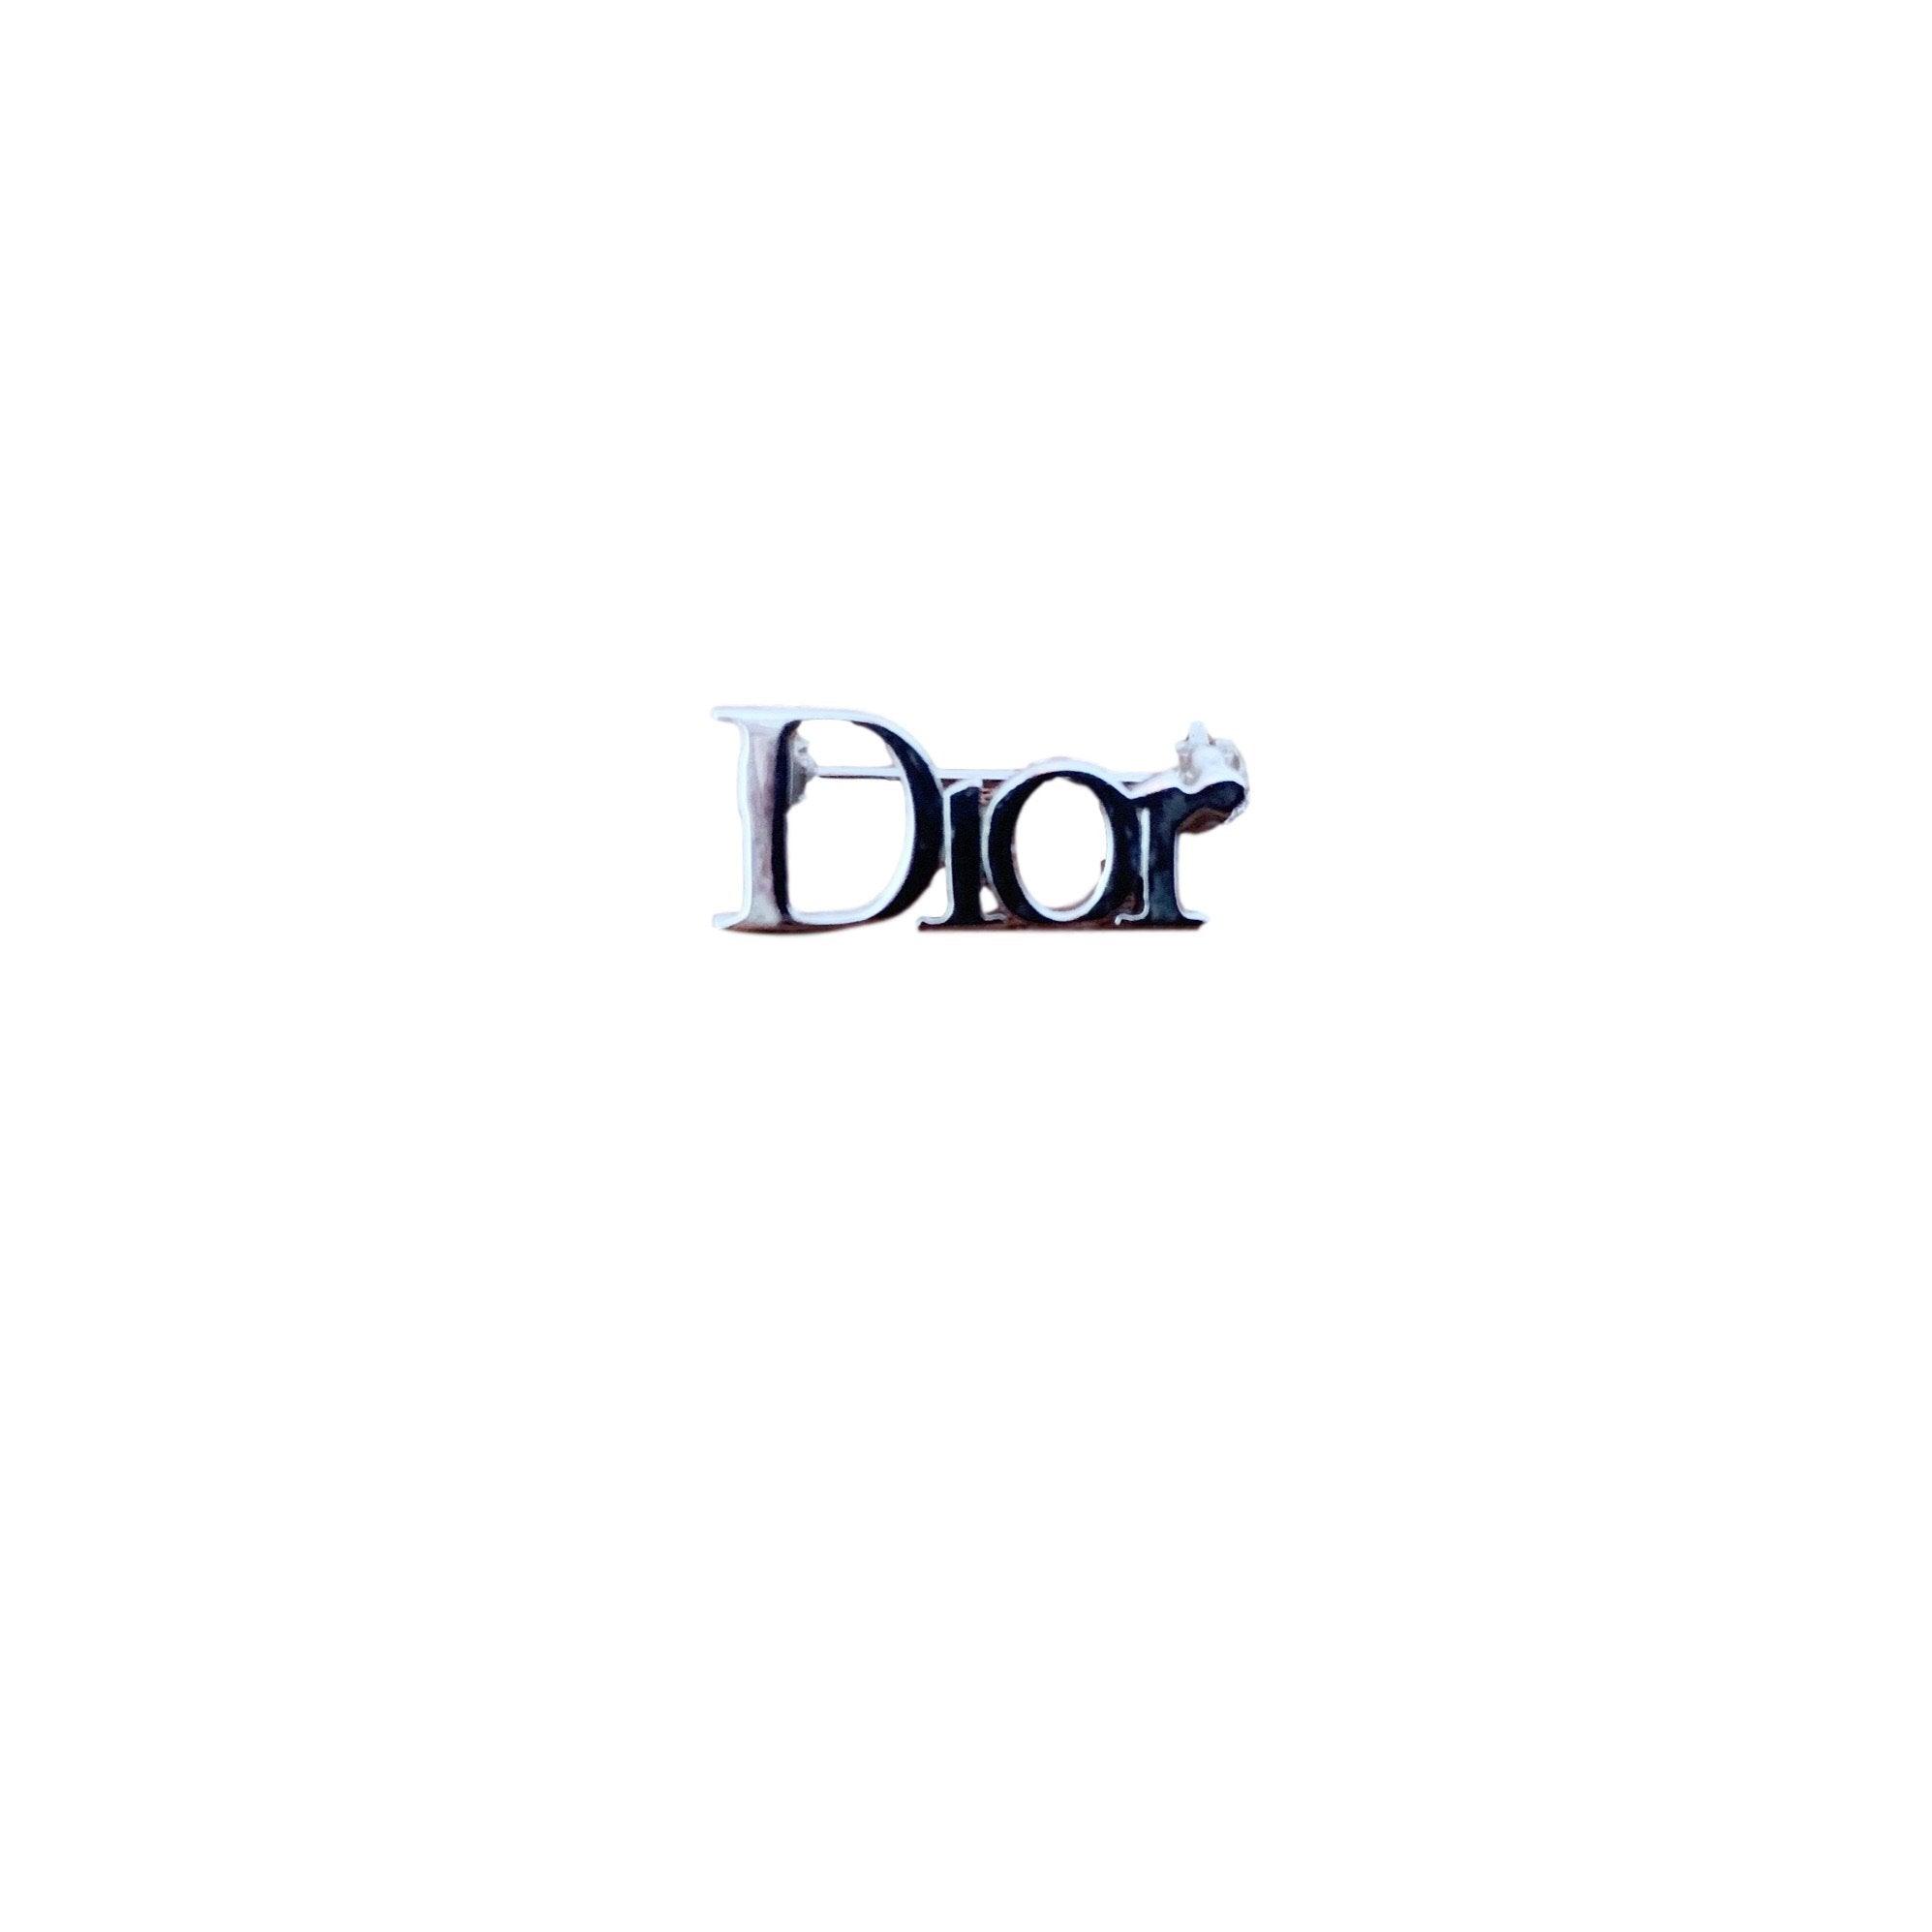 Dior Silver Mini Brooch - Accessories